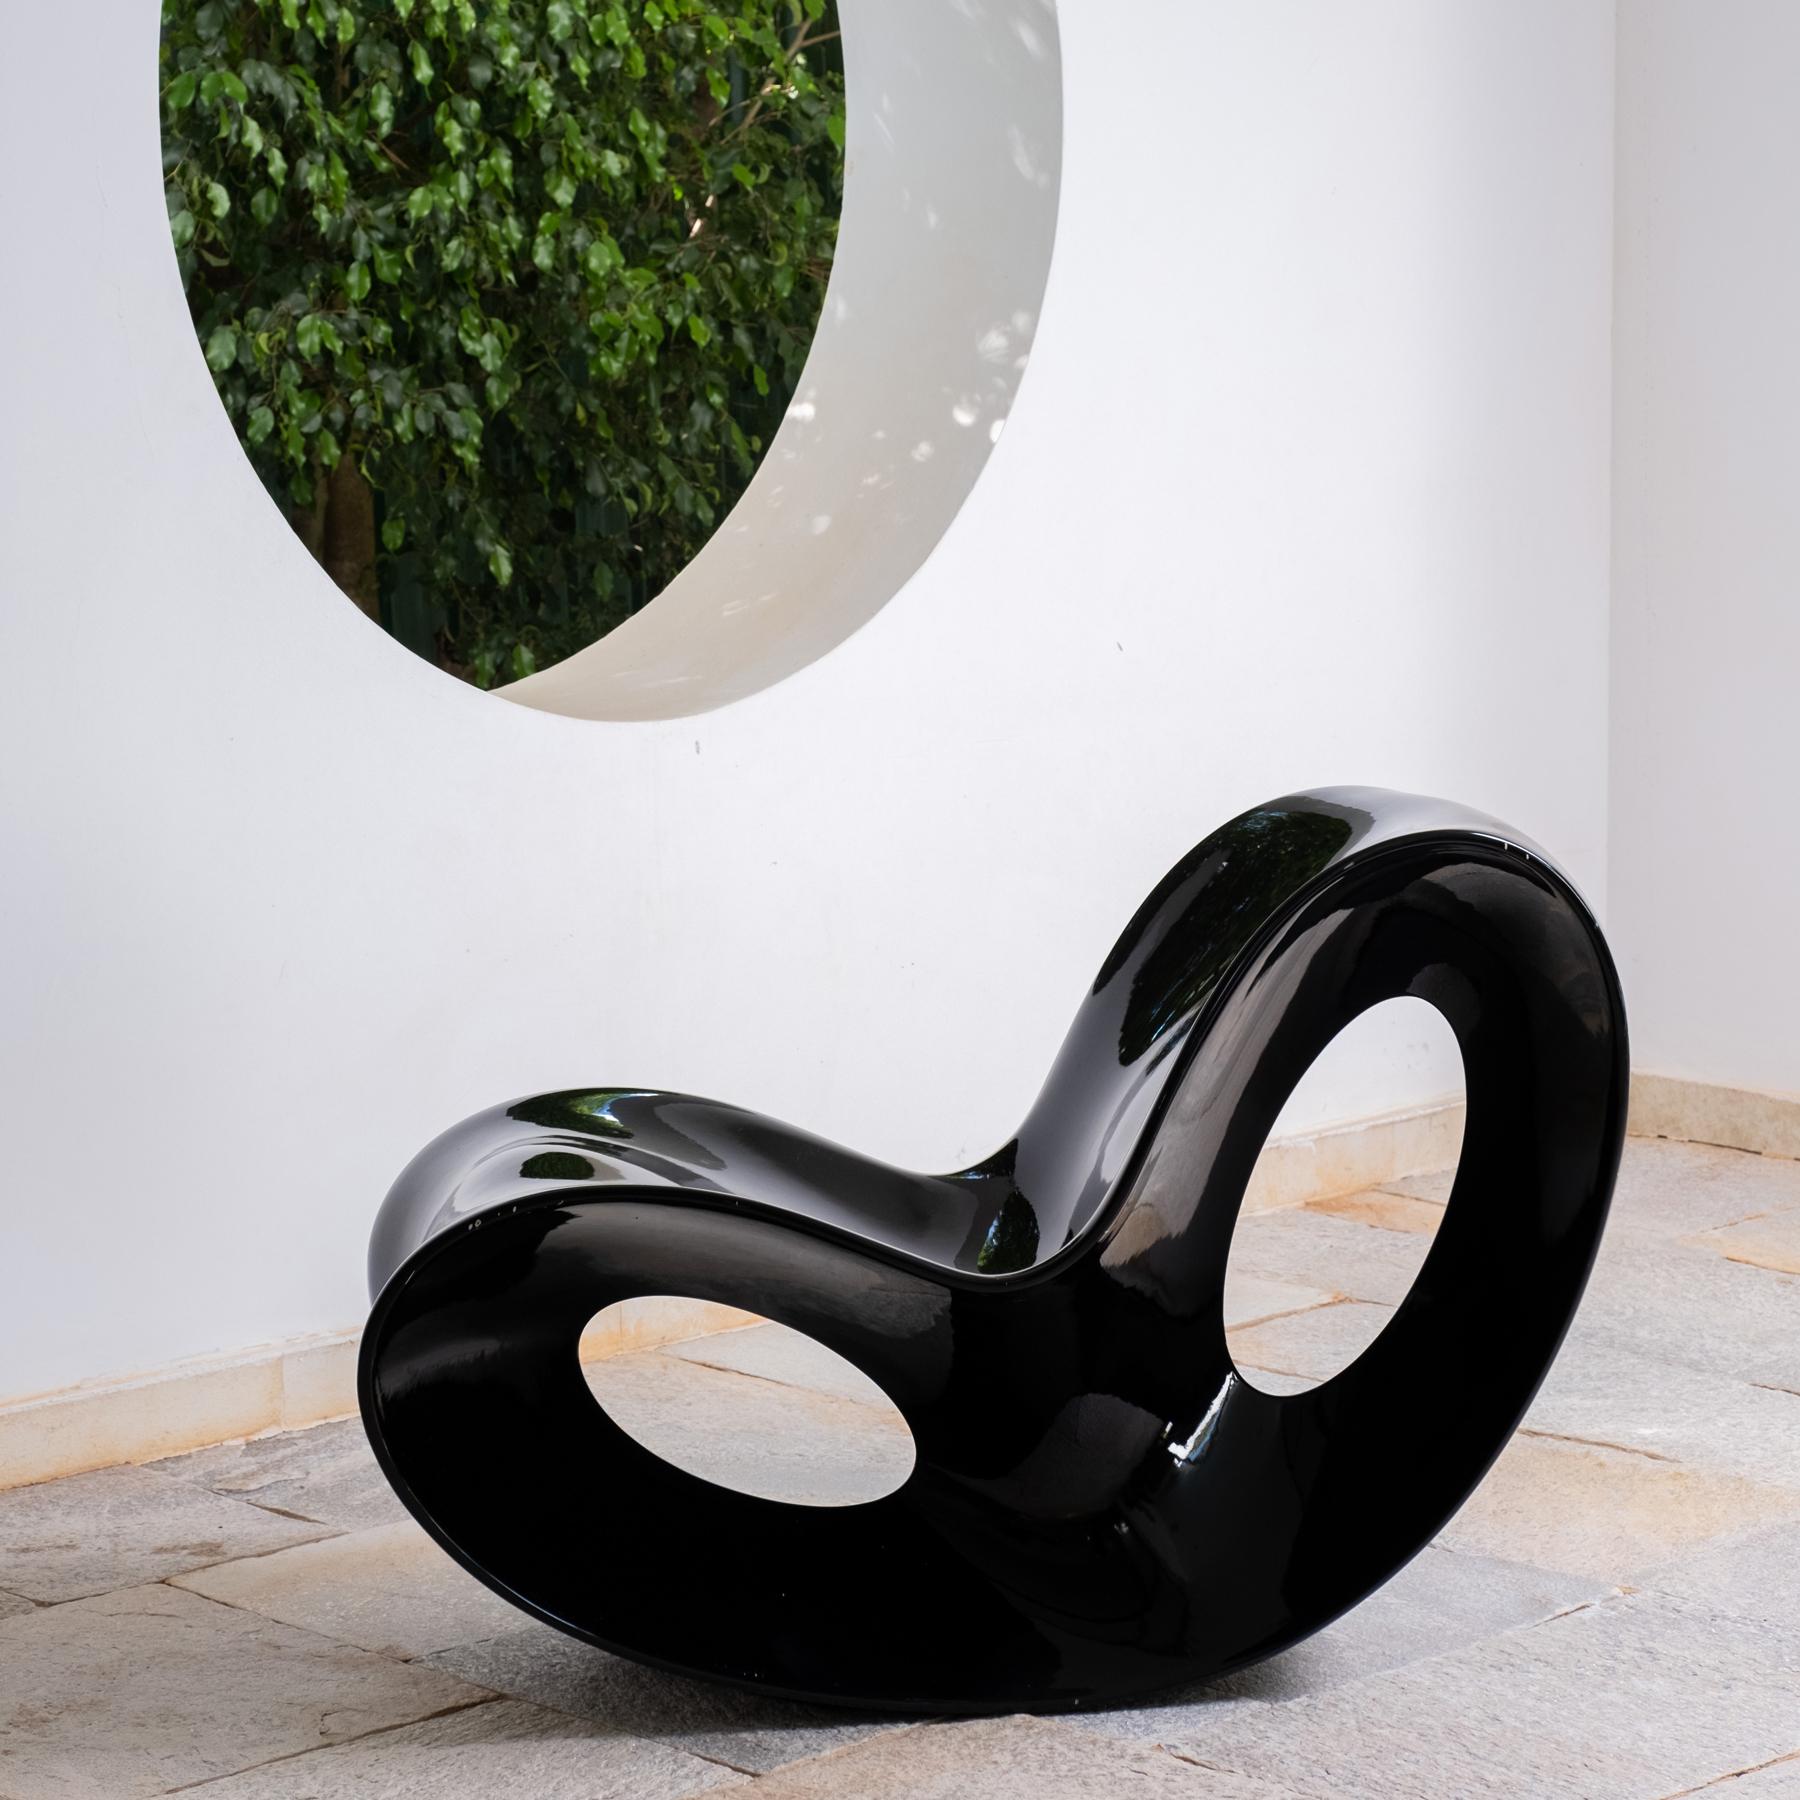 Le fauteuil à bascule Voido a été conçu par Ron Arad pour le fabricant Magis en 2006.
Cette pièce de design contemporain est une véritable sculpture de par sa personnalité et son style intemporel.Elle est extrêmement résistante et durable et offre